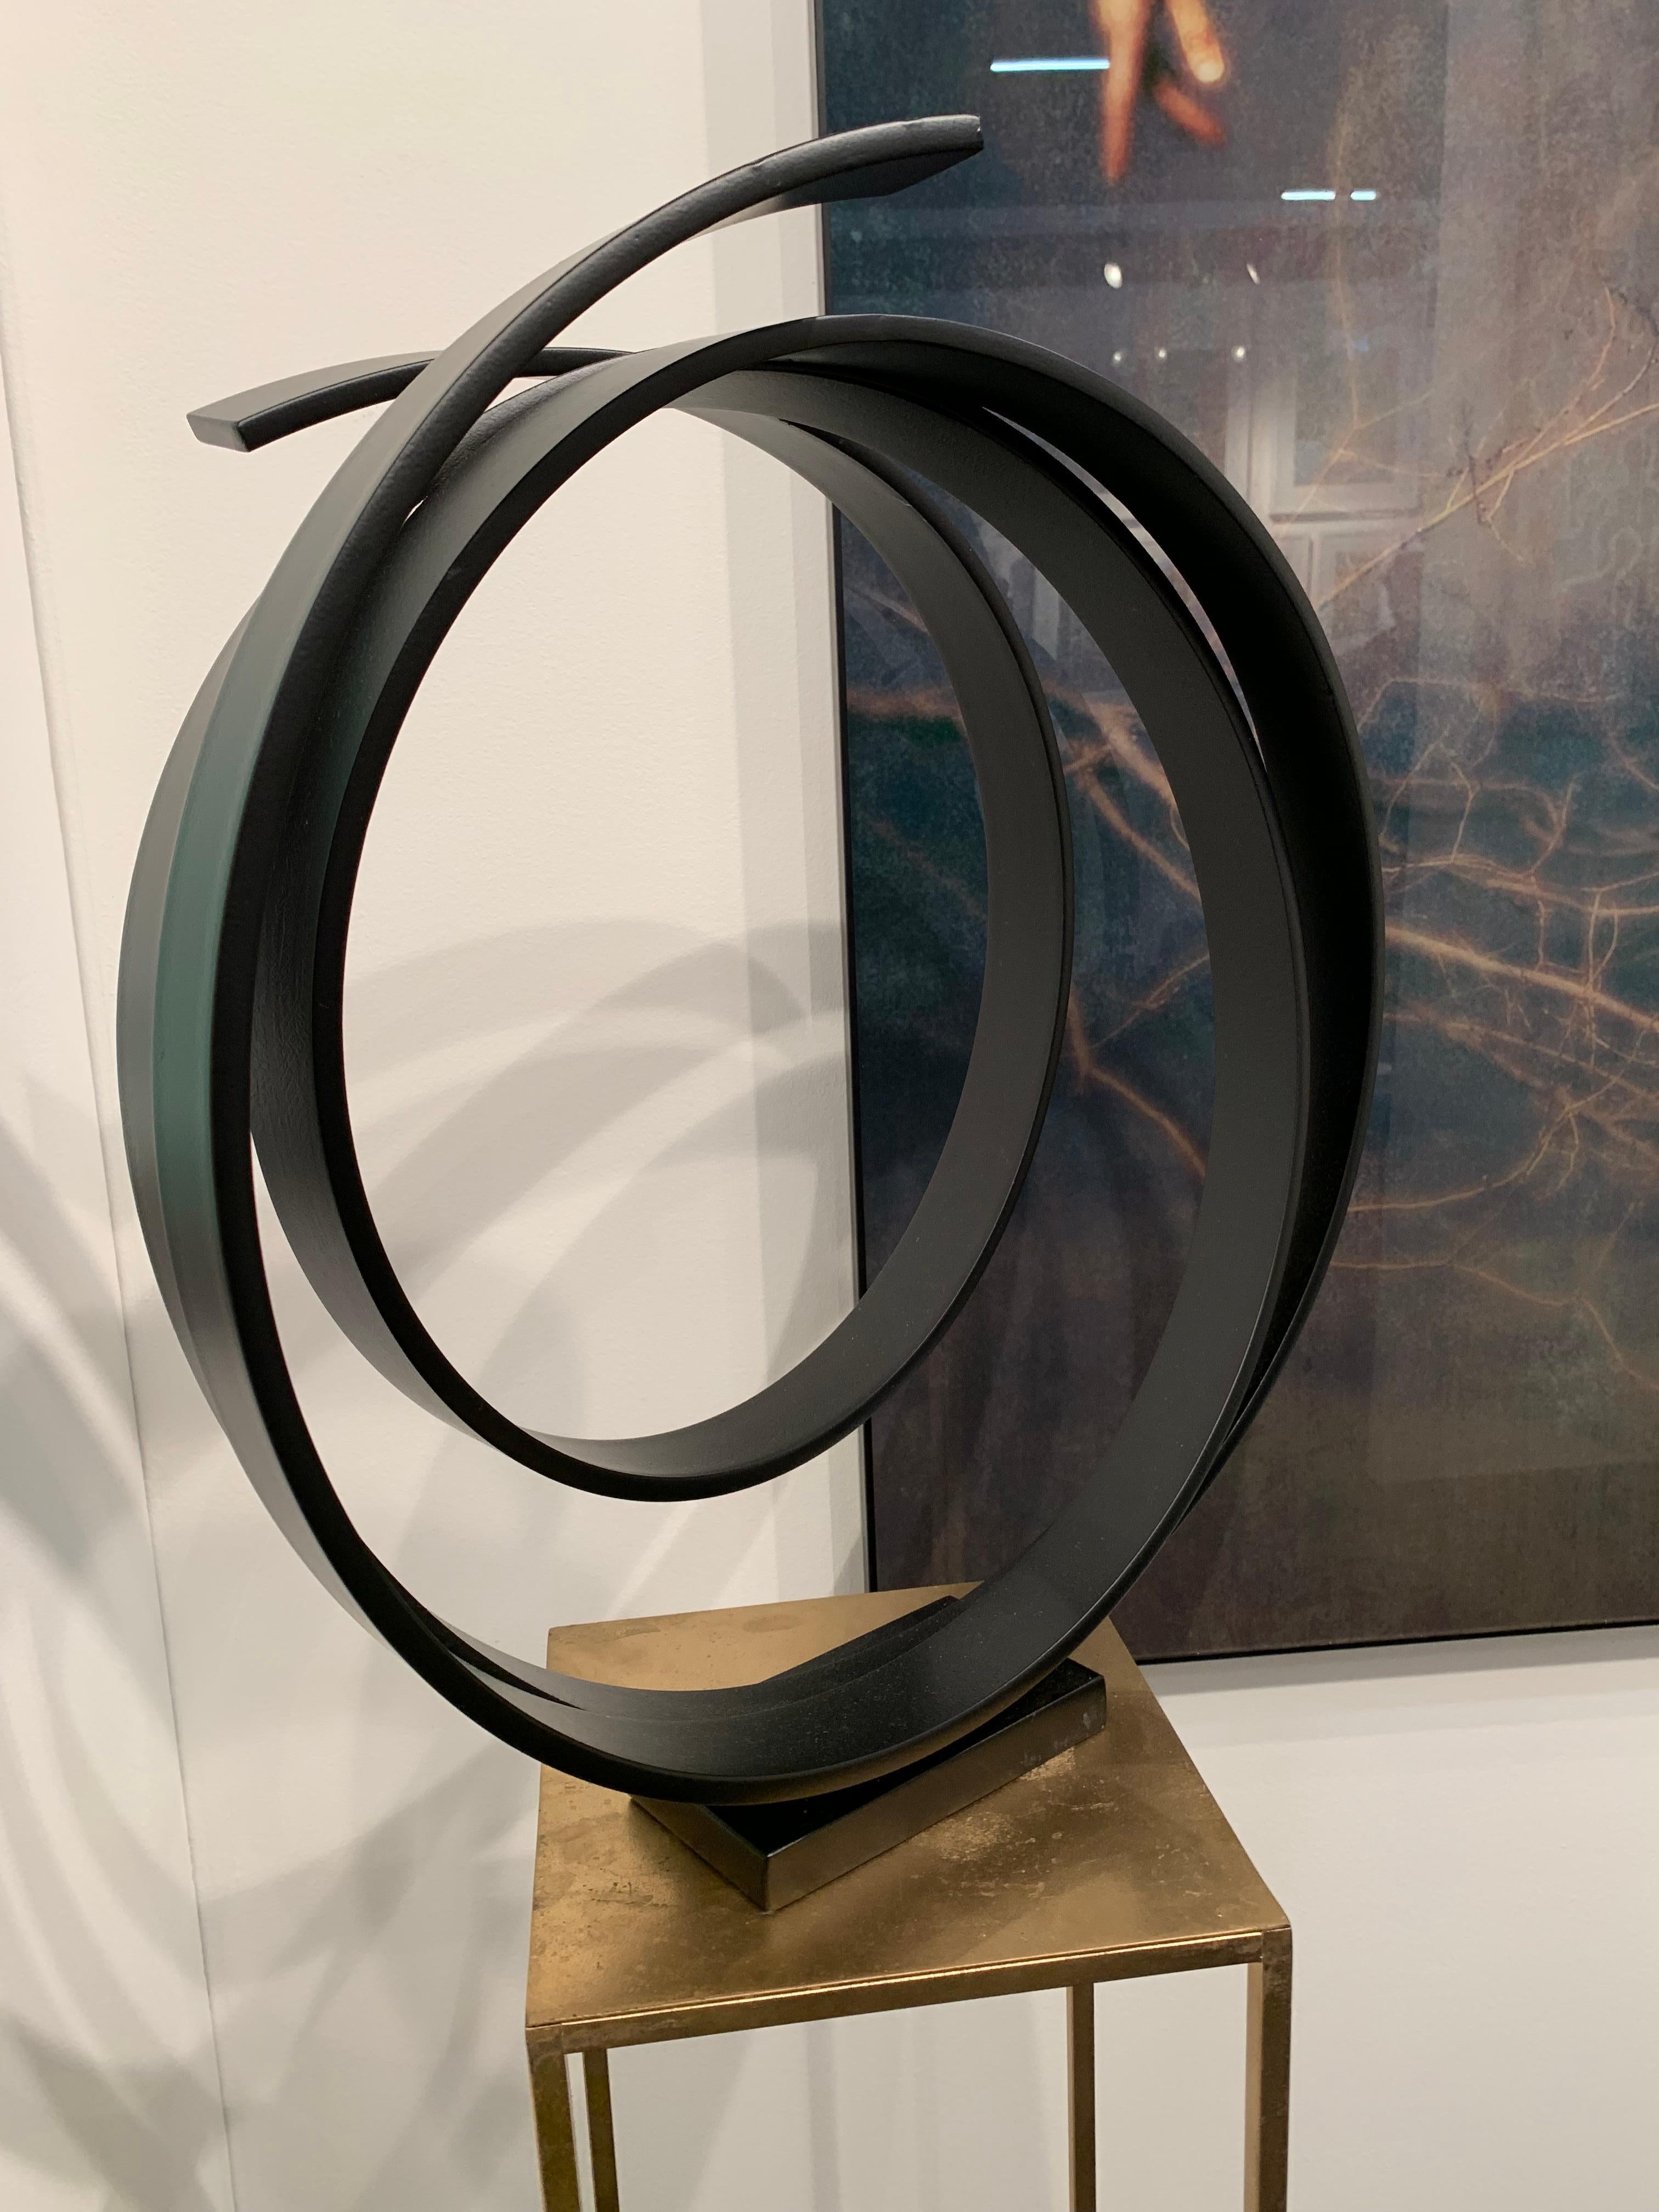 Dancing Orb by Kuno Vollet - Contemporary black circular sculpture 1